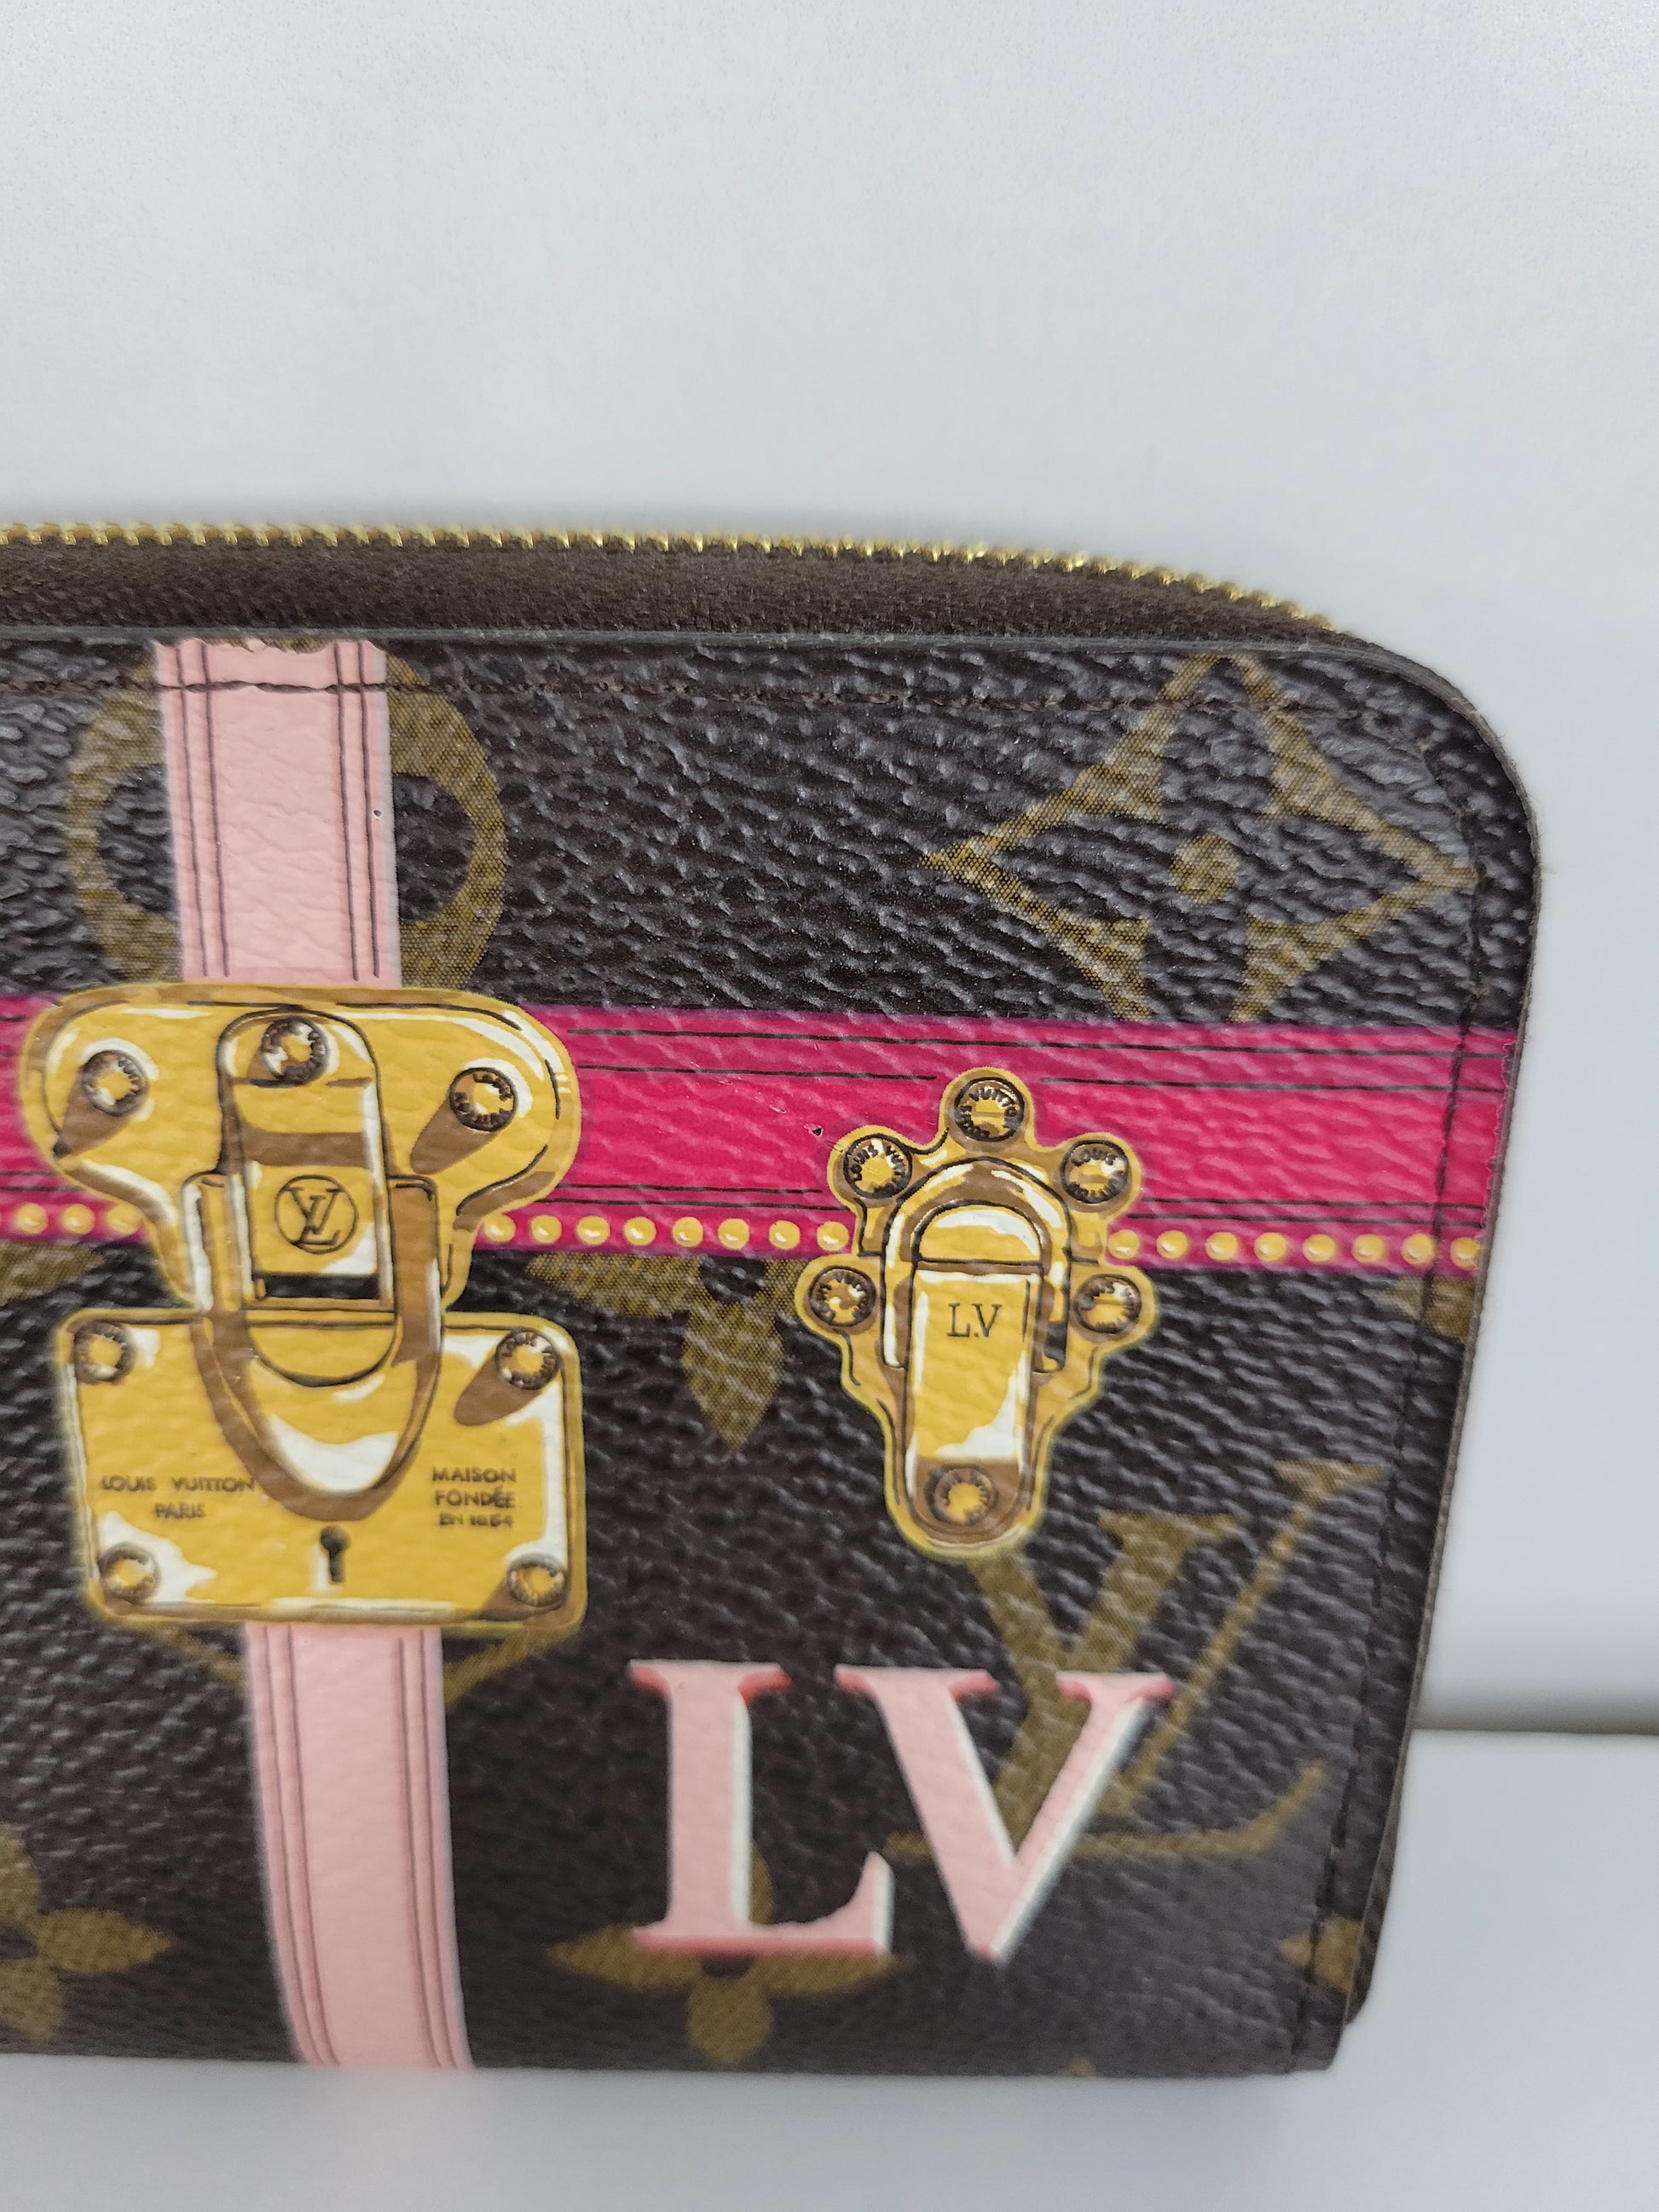 Louis Vuitton Limited Edition Monogram Canvas ILLUSTRE Zippy Wallet